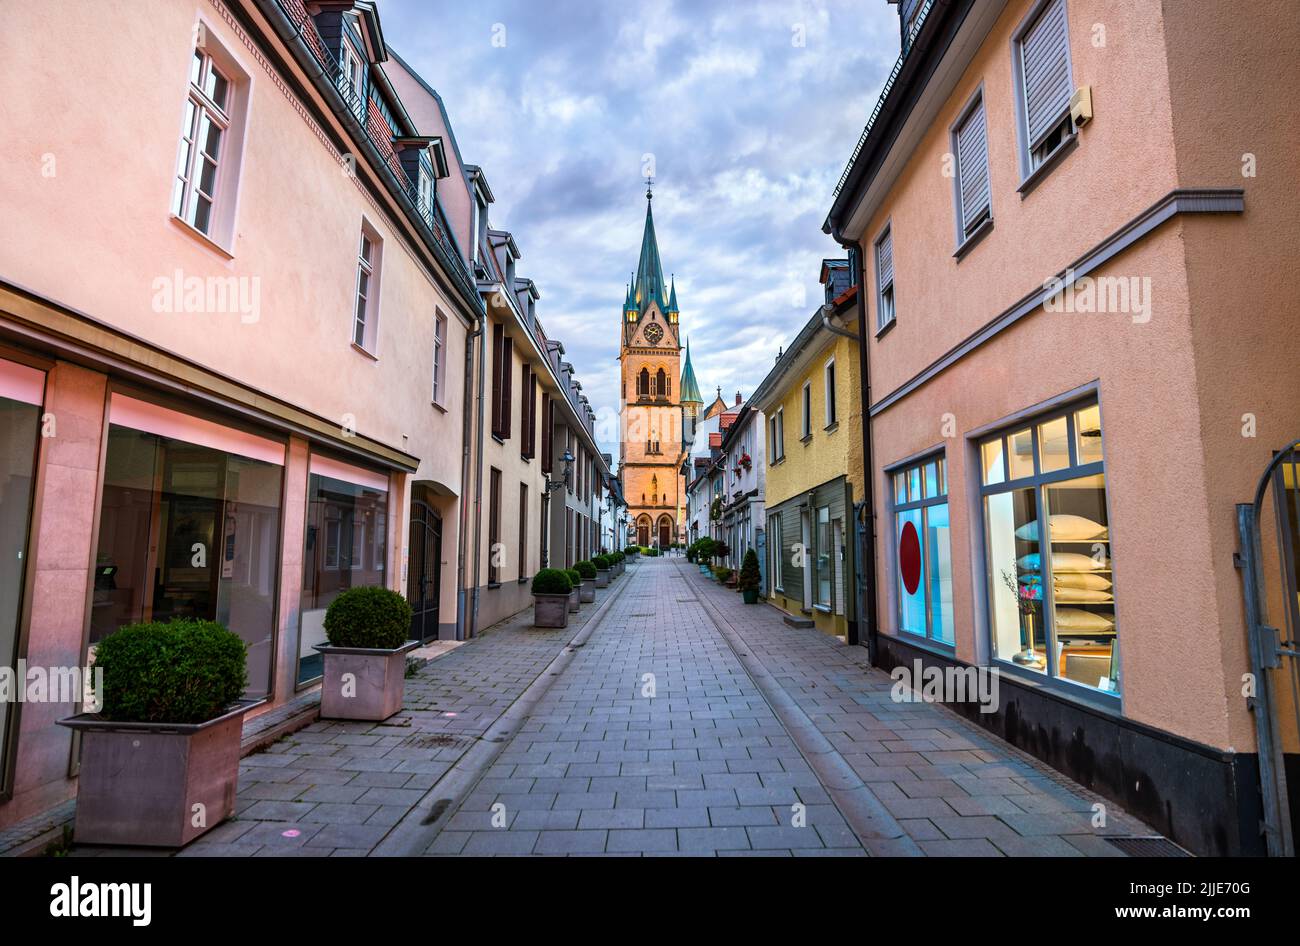 St. Mary Church in Bad Homburg, Germany Stock Photo